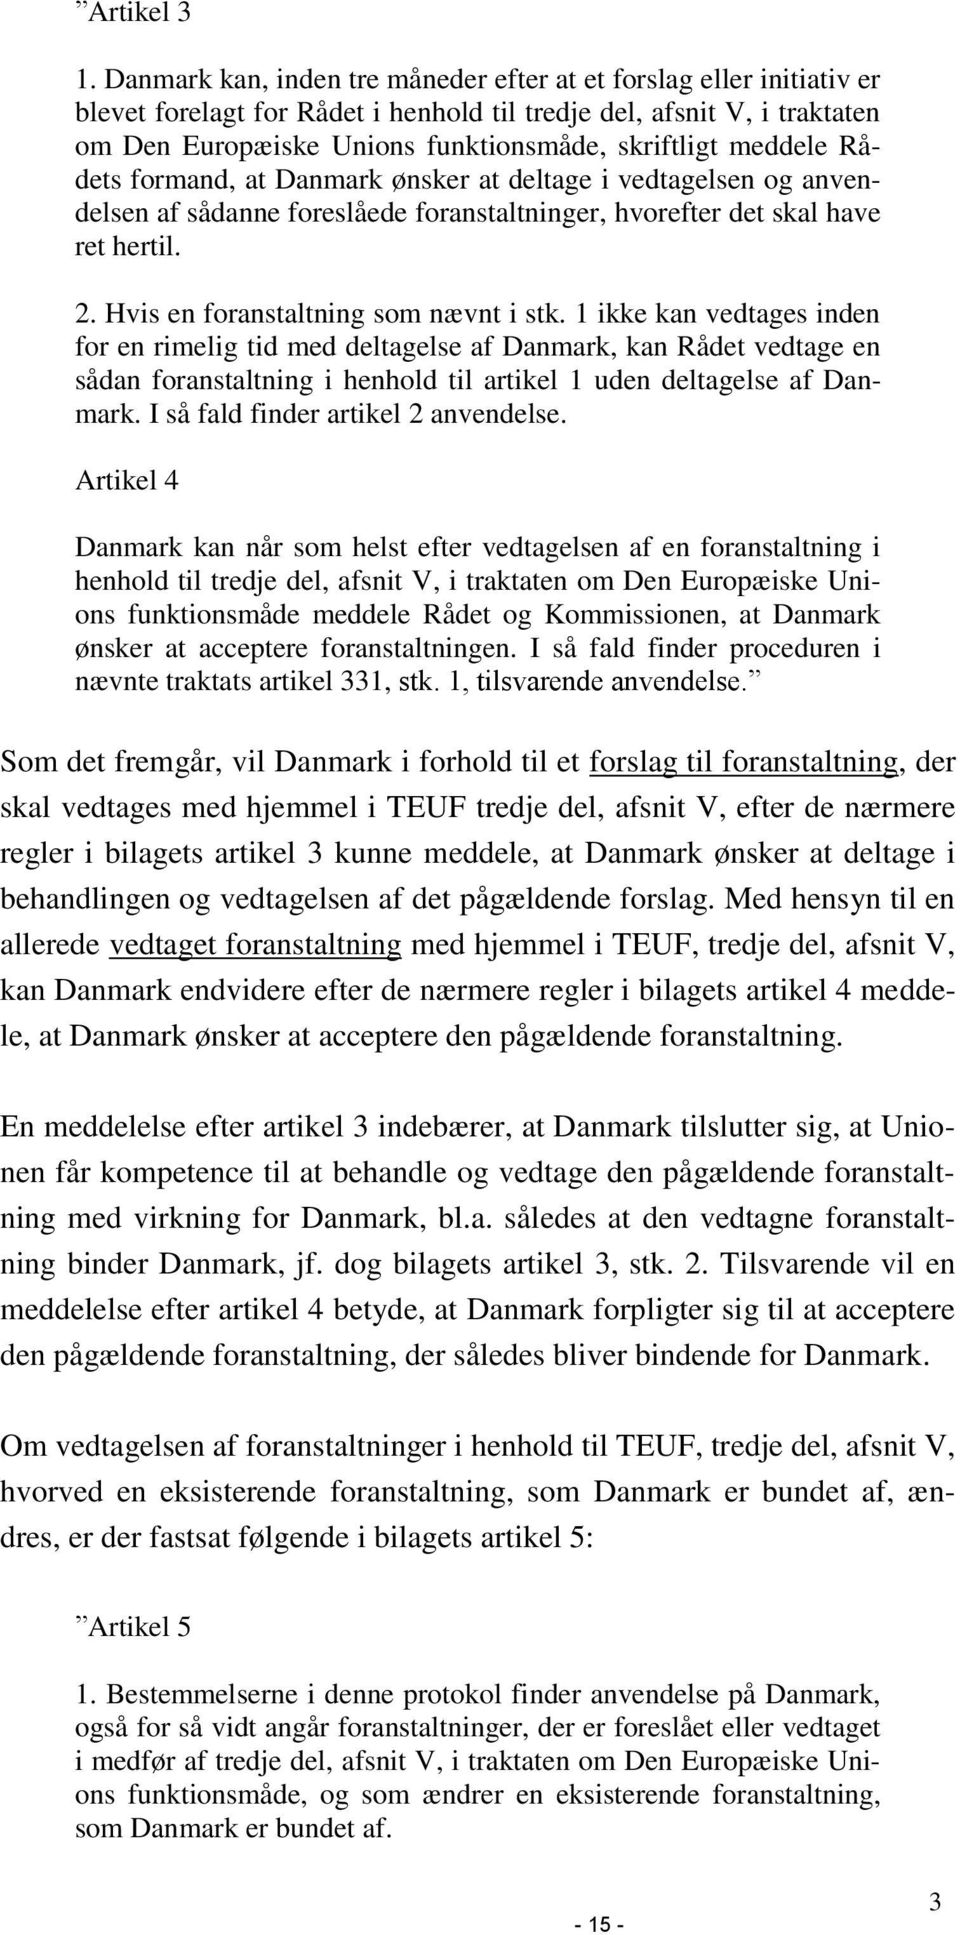 meddele Rådets formand, at Danmark ønsker at deltage i vedtagelsen og anvendelsen af sådanne foreslåede foranstaltninger, hvorefter det skal have ret hertil. 2. Hvis en foranstaltning som nævnt i stk.